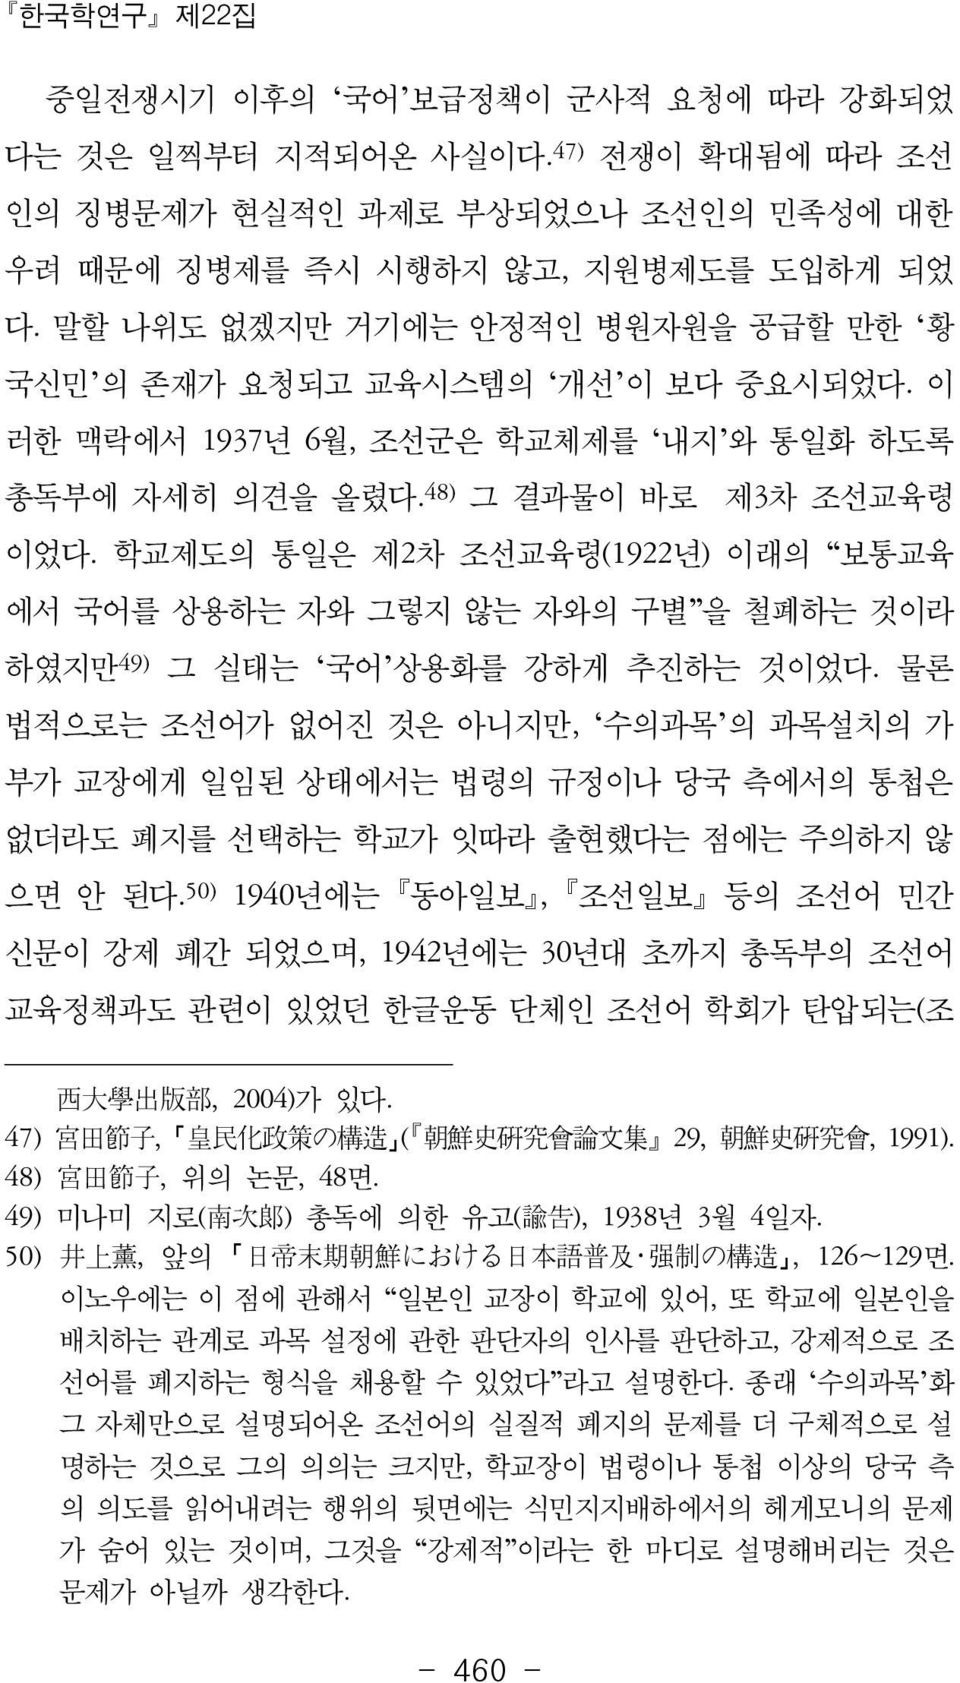 학교제도의 통일은 제2차 조선교육령(1922년) 이래의 보통교육 에서 국어를 상용하는 자와 그렇지 않는 자와의 구별 을 철폐하는 것이라 하였지만 49) 그 실태는 국어 상용화를 강하게 추진하는 것이었다.